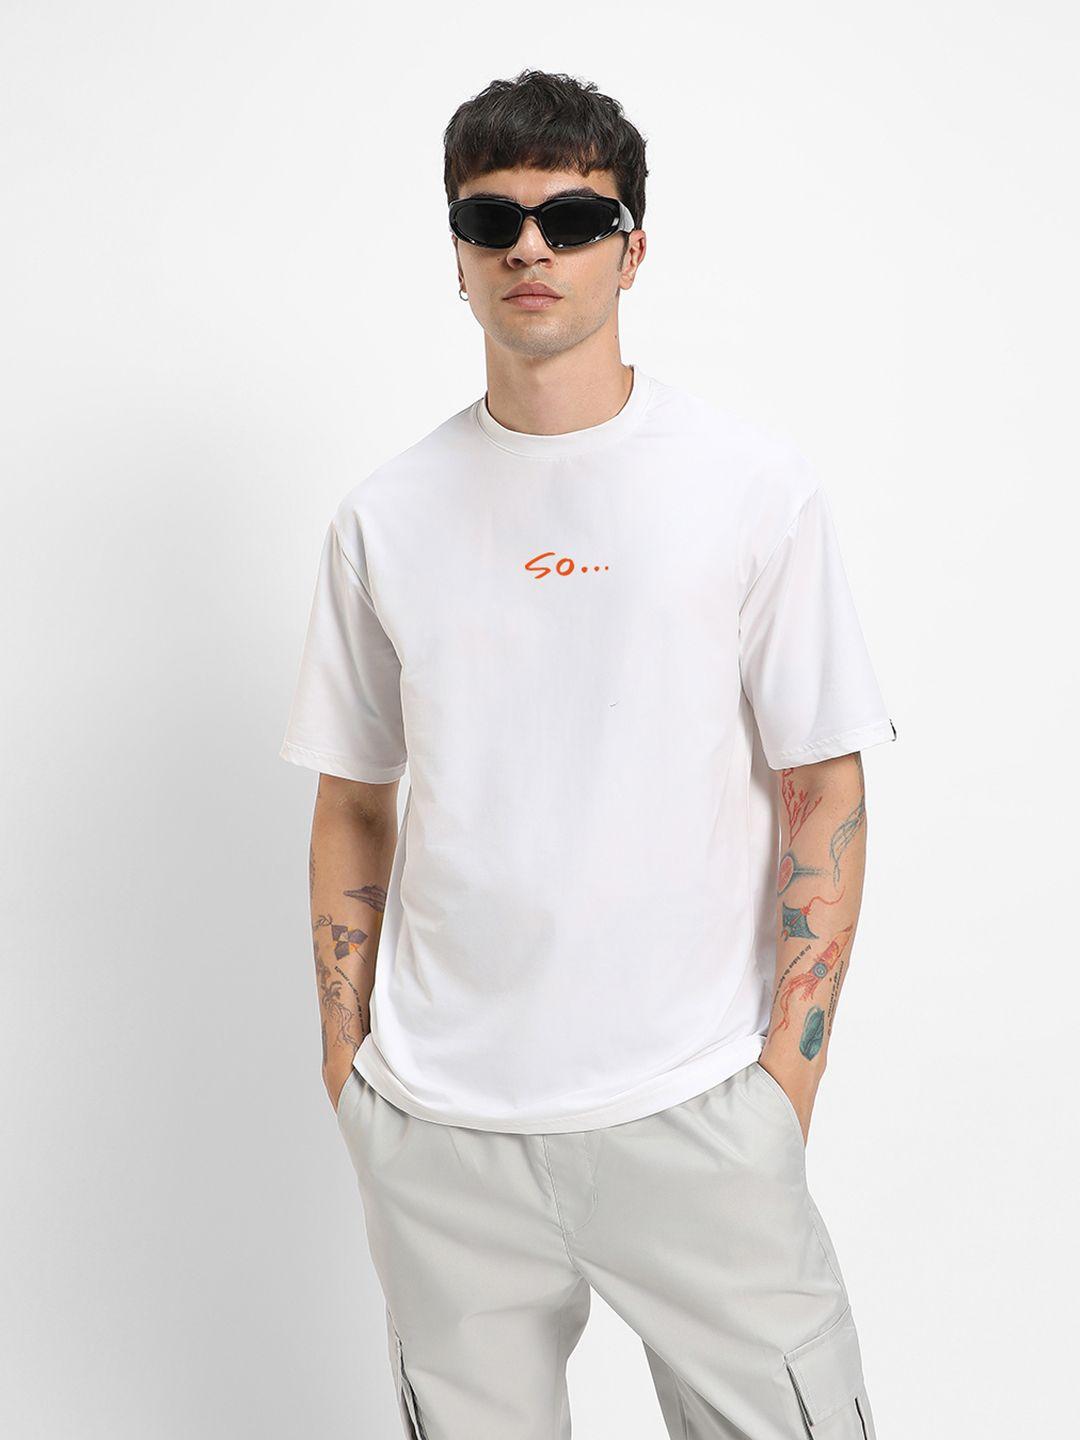 bewakoof-men-typography-printed-oversize-t-shirt